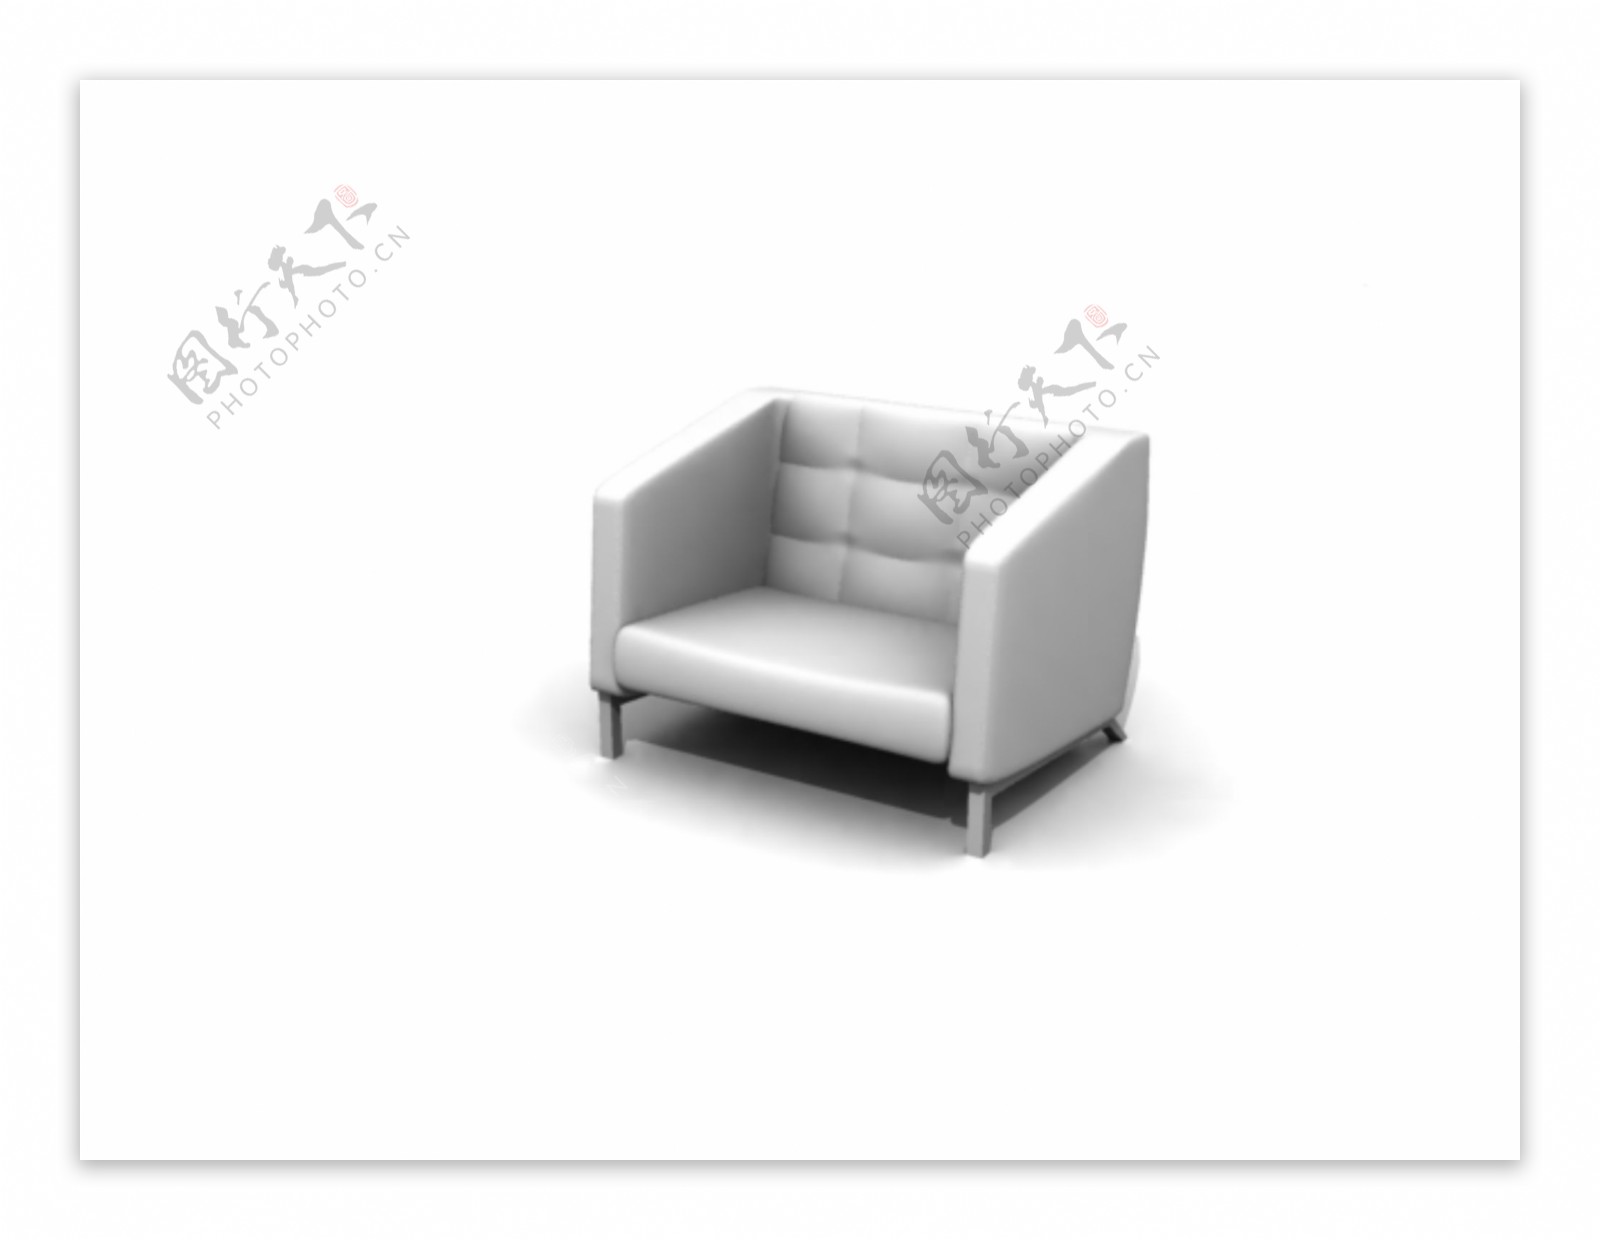 公装家具之公共座椅0633D模型